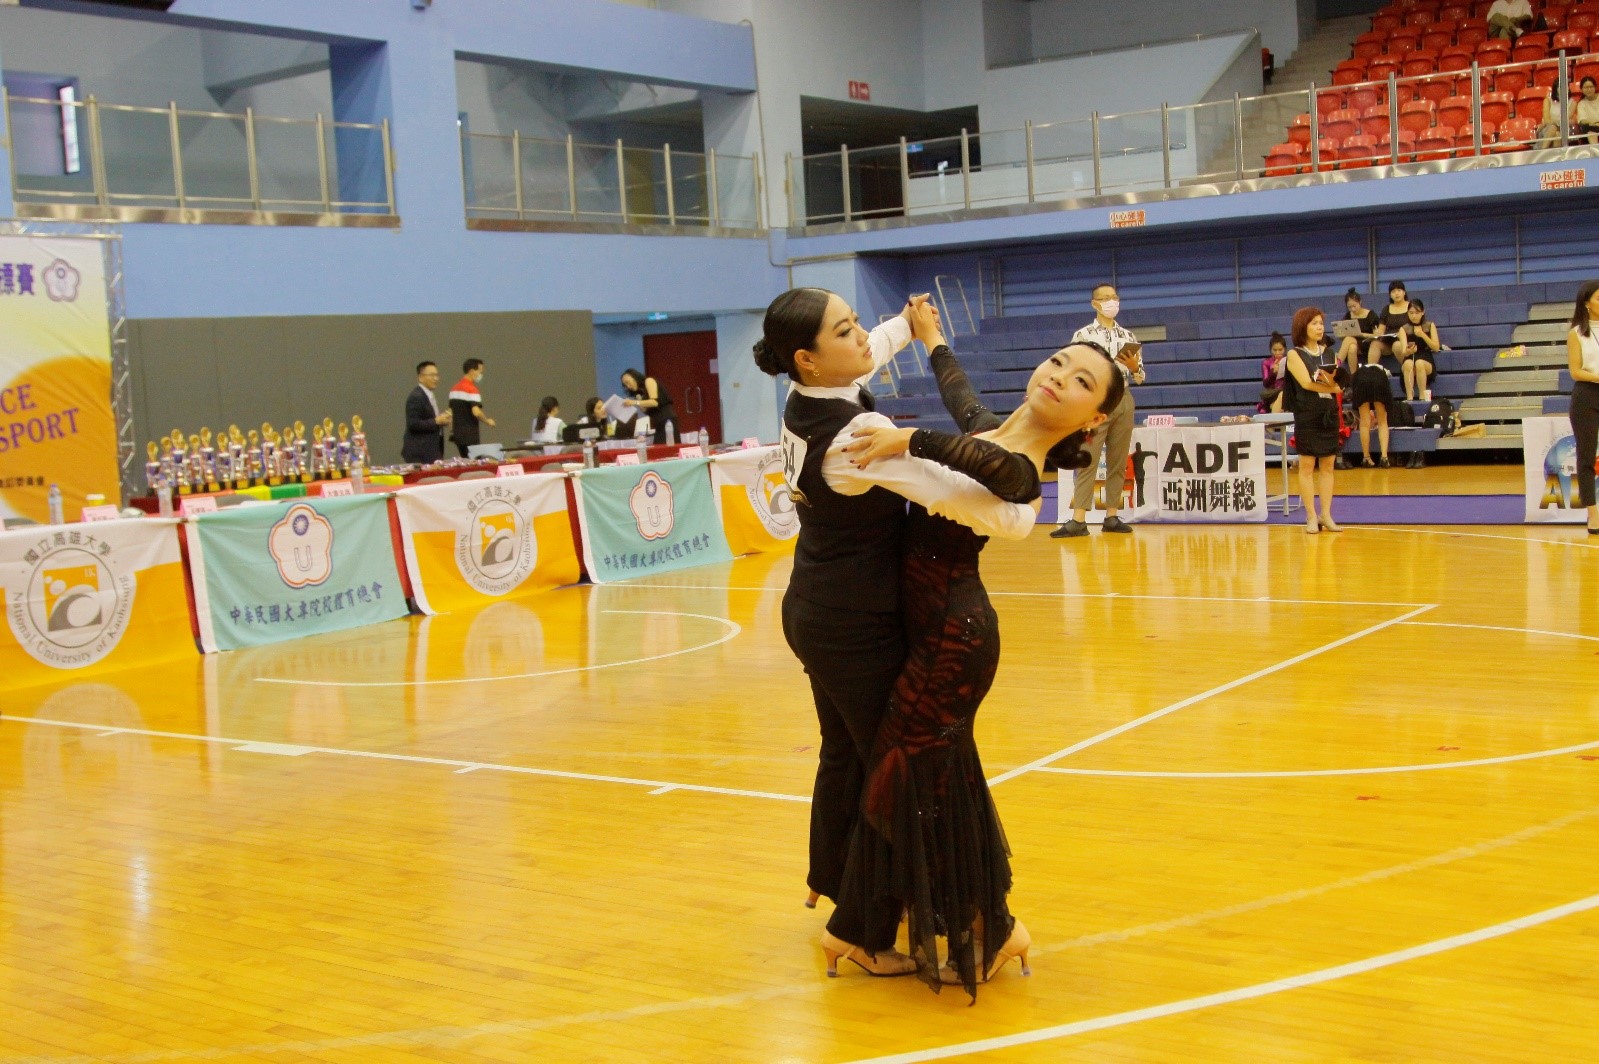 亞大運動舞蹈校隊隊長阮郁霖、舞伴張至伶在淑女摩登組「華爾滋」比賽現況。